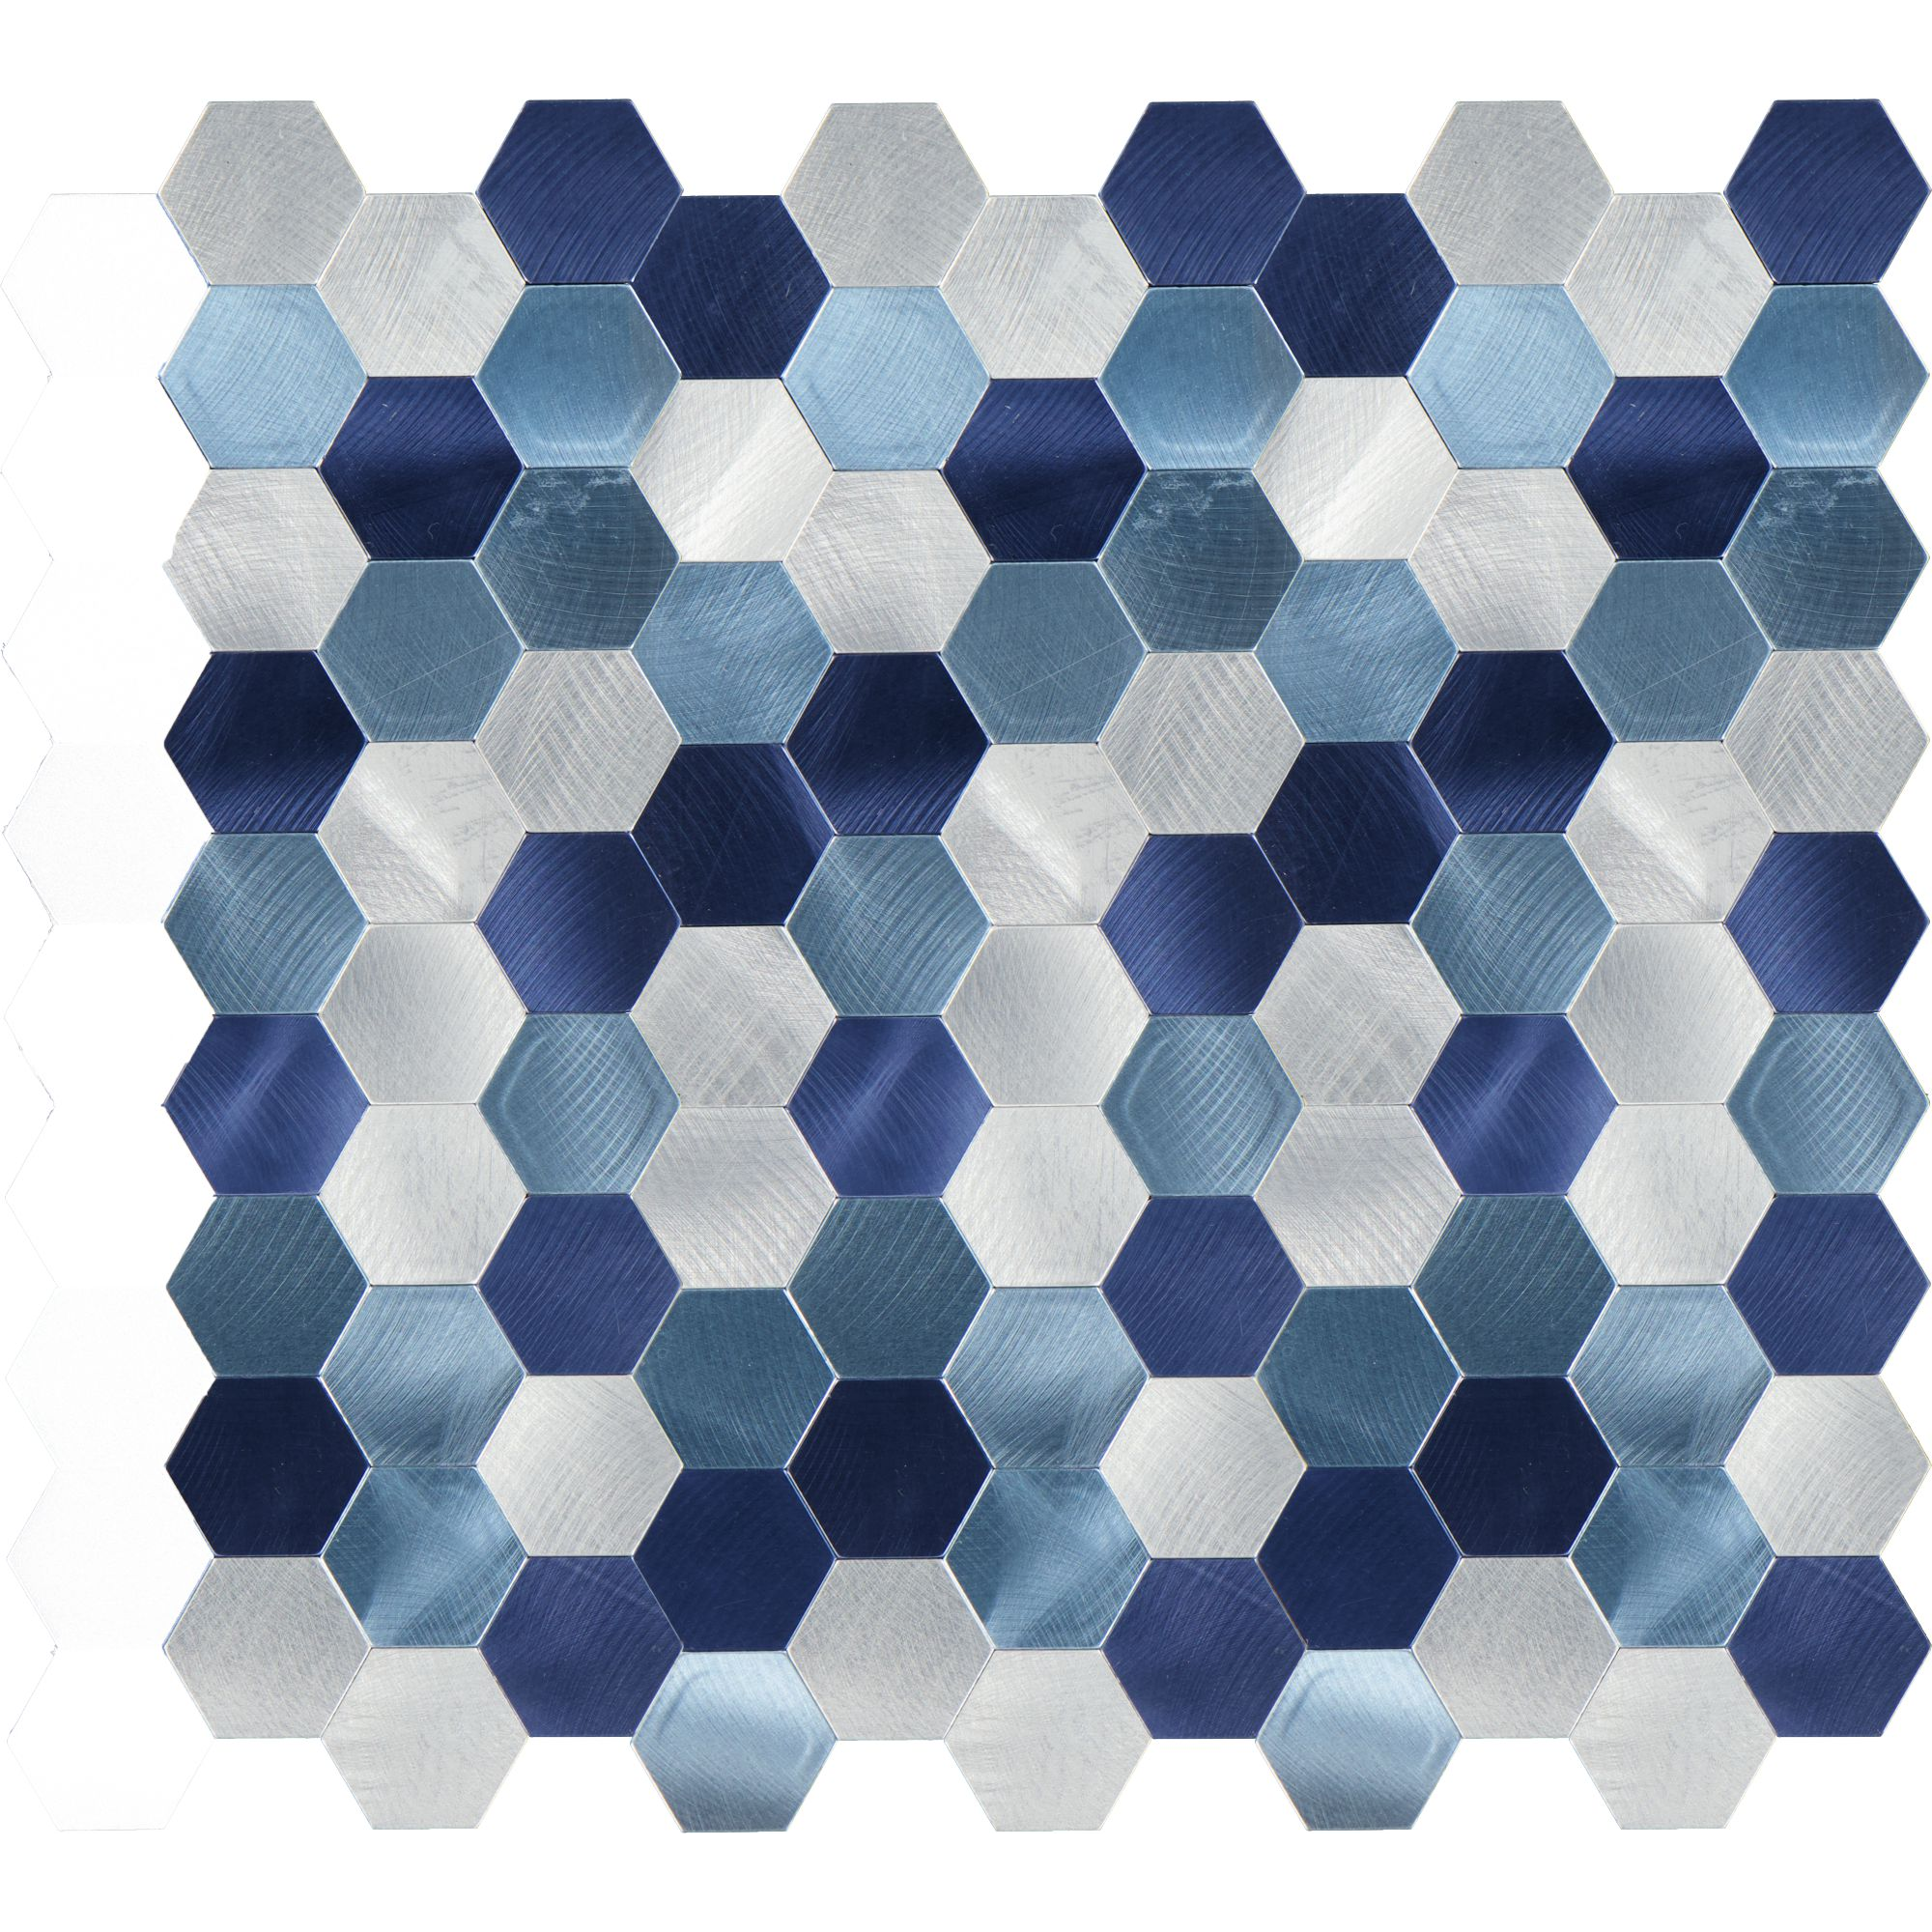 Mosaikfliese 'Easyglue' selbstklebend blau/silber 28 x 29 cm + product picture